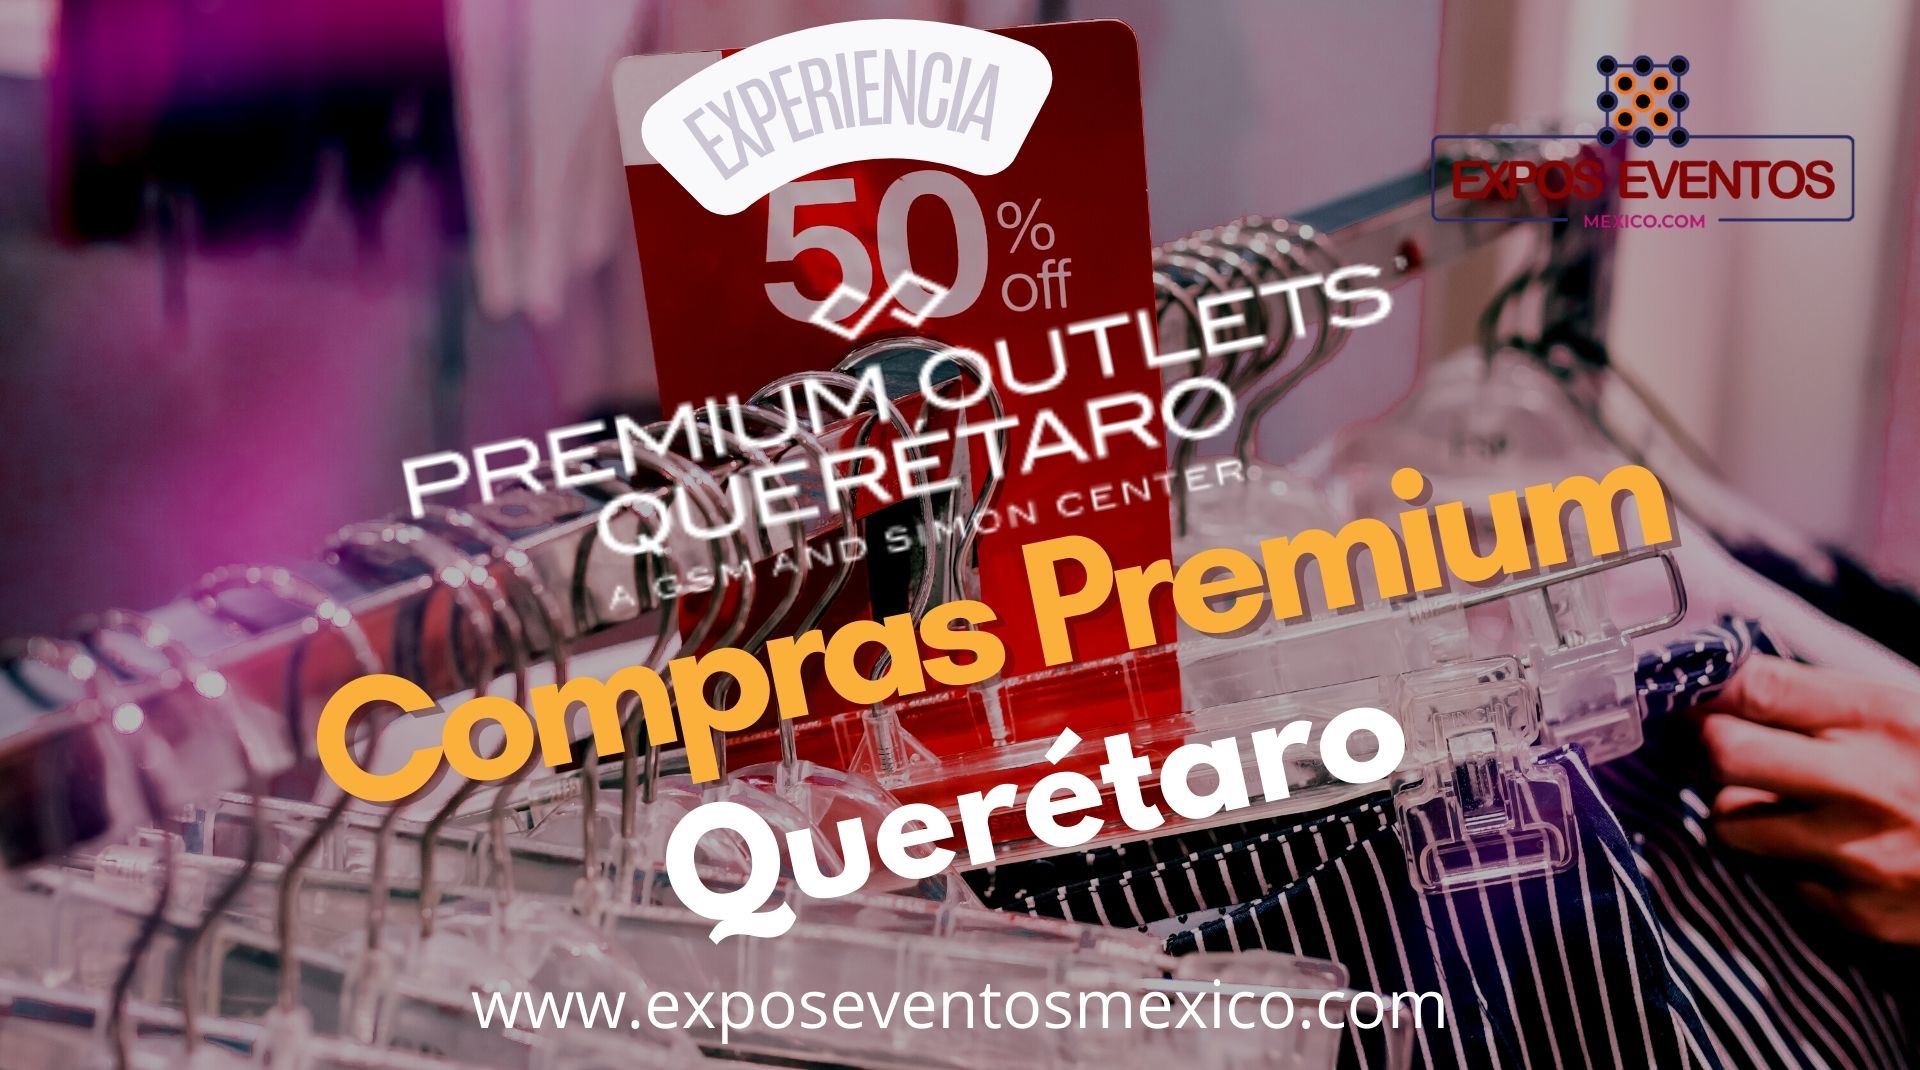 Premium Outlets Querétaro, Premium Outlet Querétaro, Premium Outlet Centers México